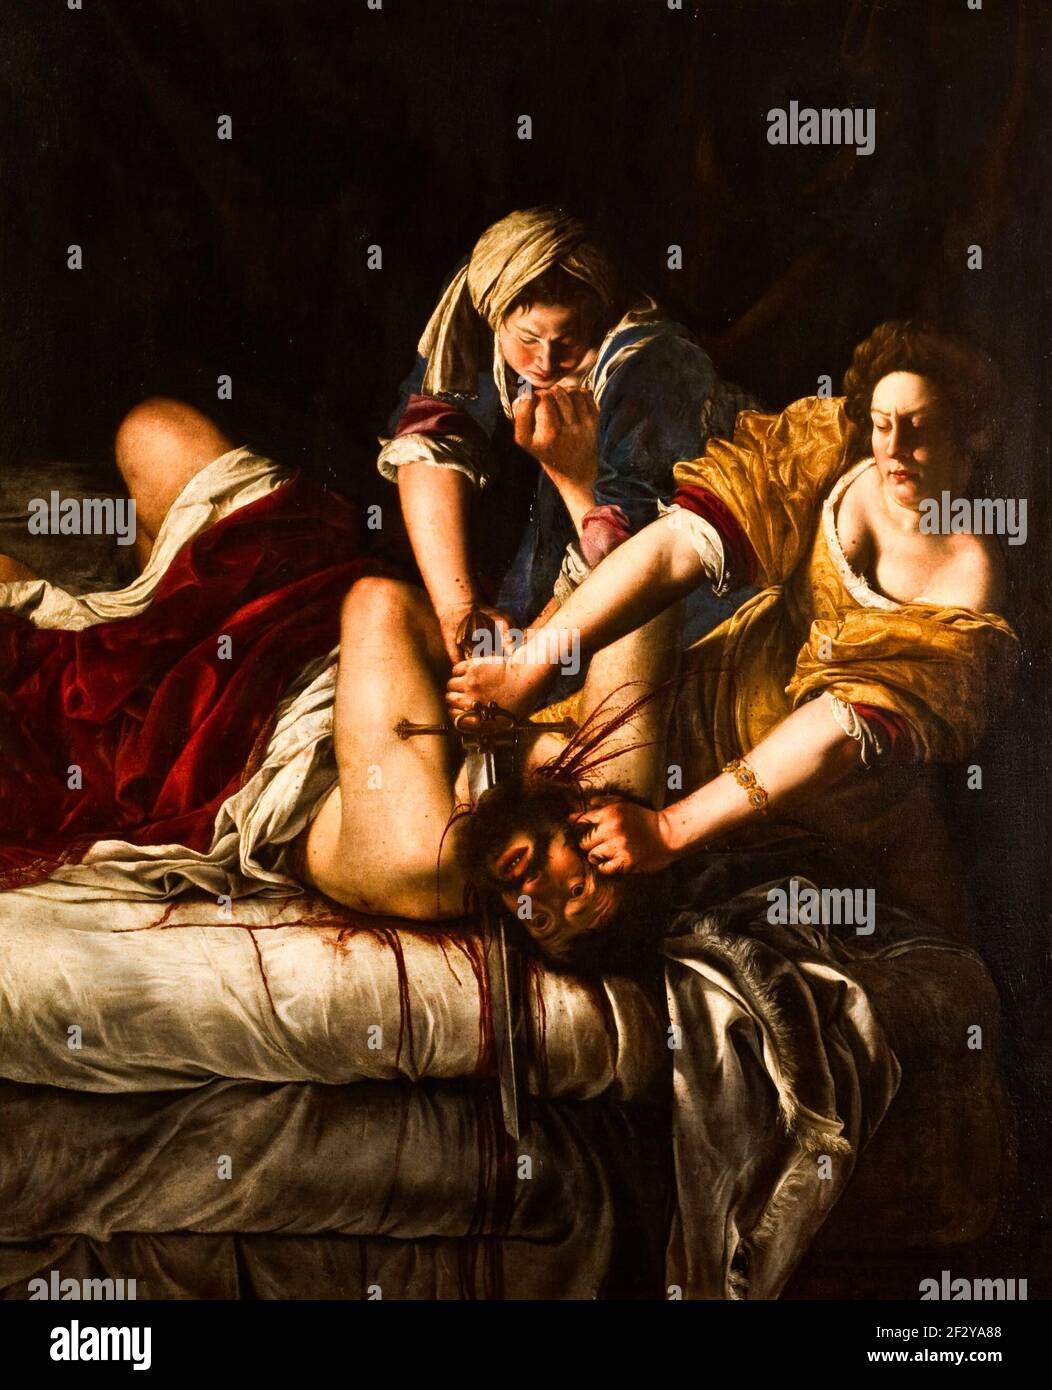 Judith Beheading Holofernes - Artemisia Gentileschi, vers 1620 - deux femmes épingler un homme sur un lit. D'une main, Judith tient sa tête; de l'autre, elle coupe sa gorge avec une longue épée. L'intensité de la scène est mise en évidence par le sang qui goutte à goutte qui absorbe les draps blancs et les yeux de l'homme grand ouverts — conscient, mais impuissants. Artemisia est plus une championne de femmes fortes que d'une femme obsédée par la violence et la vengeance. Banque D'Images